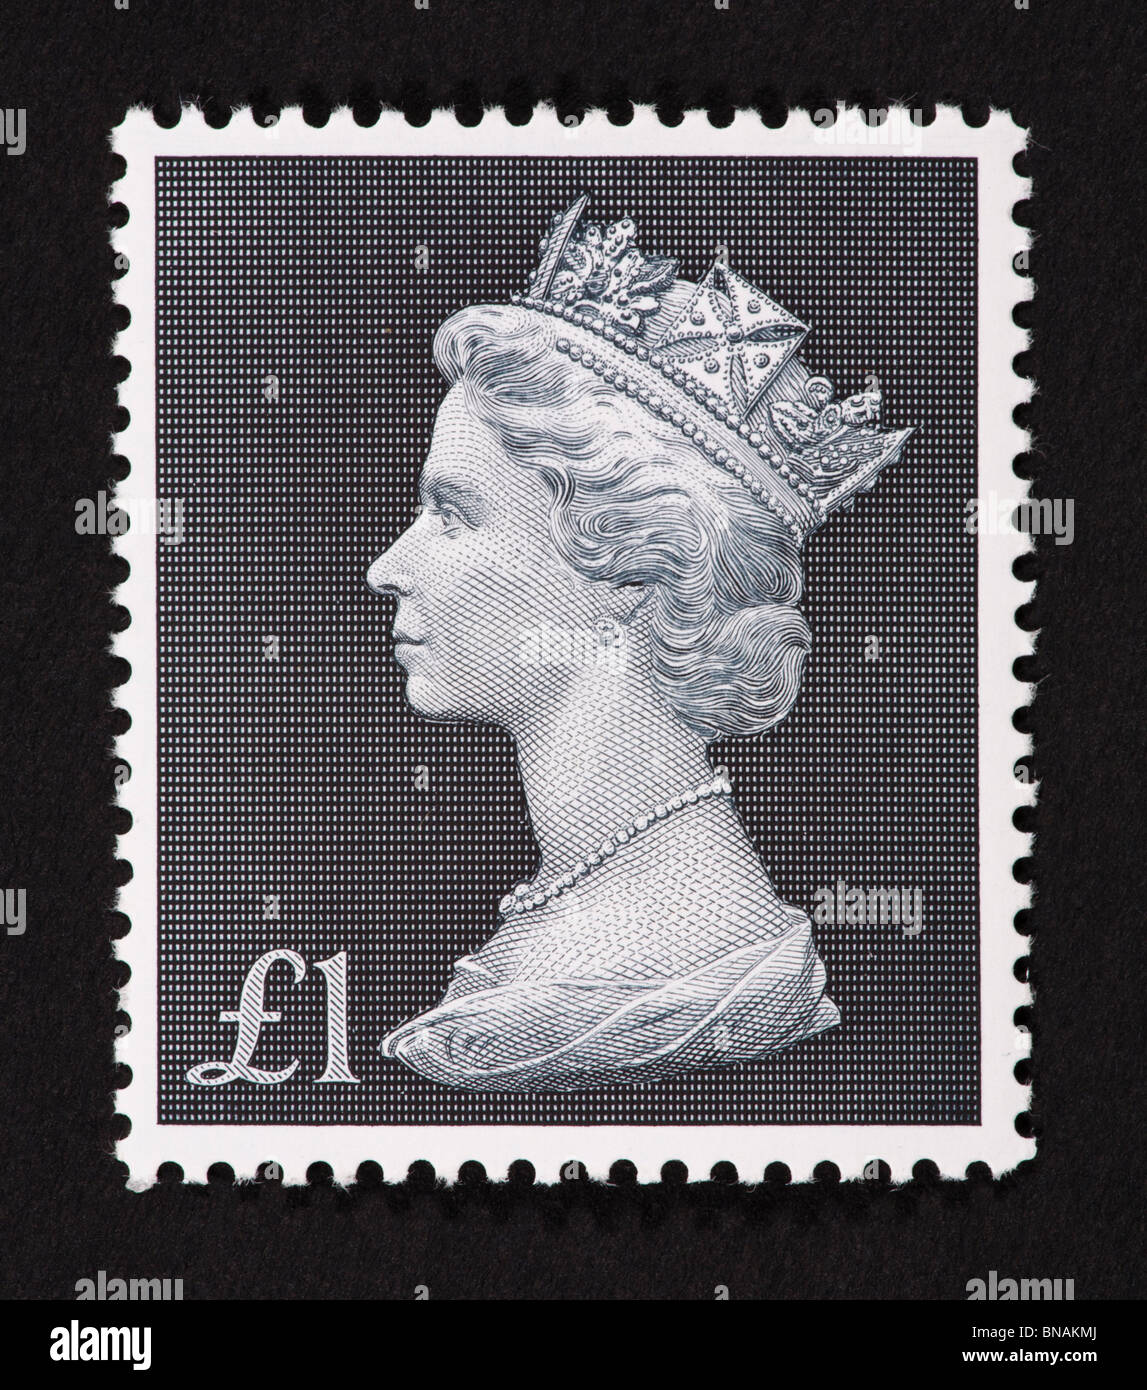 Timbre de Grande Bretagne représentant un buste de la reine Elizabeth. Banque D'Images